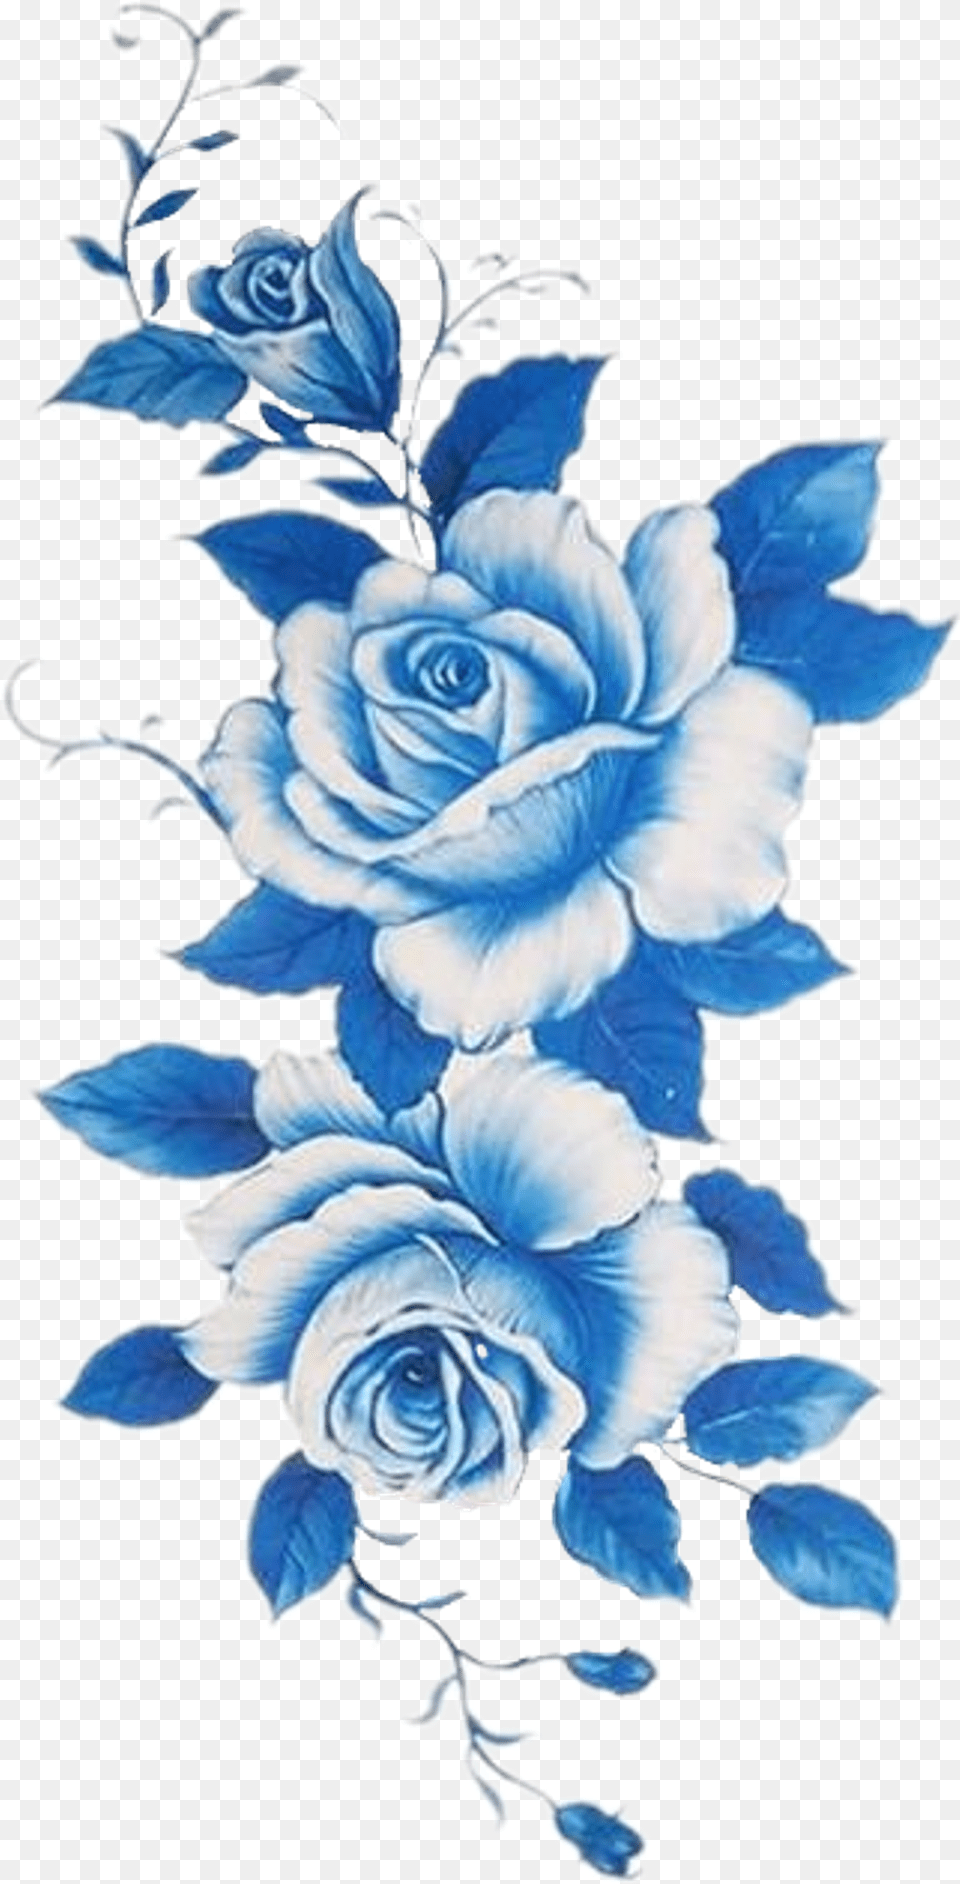 Blue Rose, Art, Floral Design, Graphics, Pattern Free Transparent Png